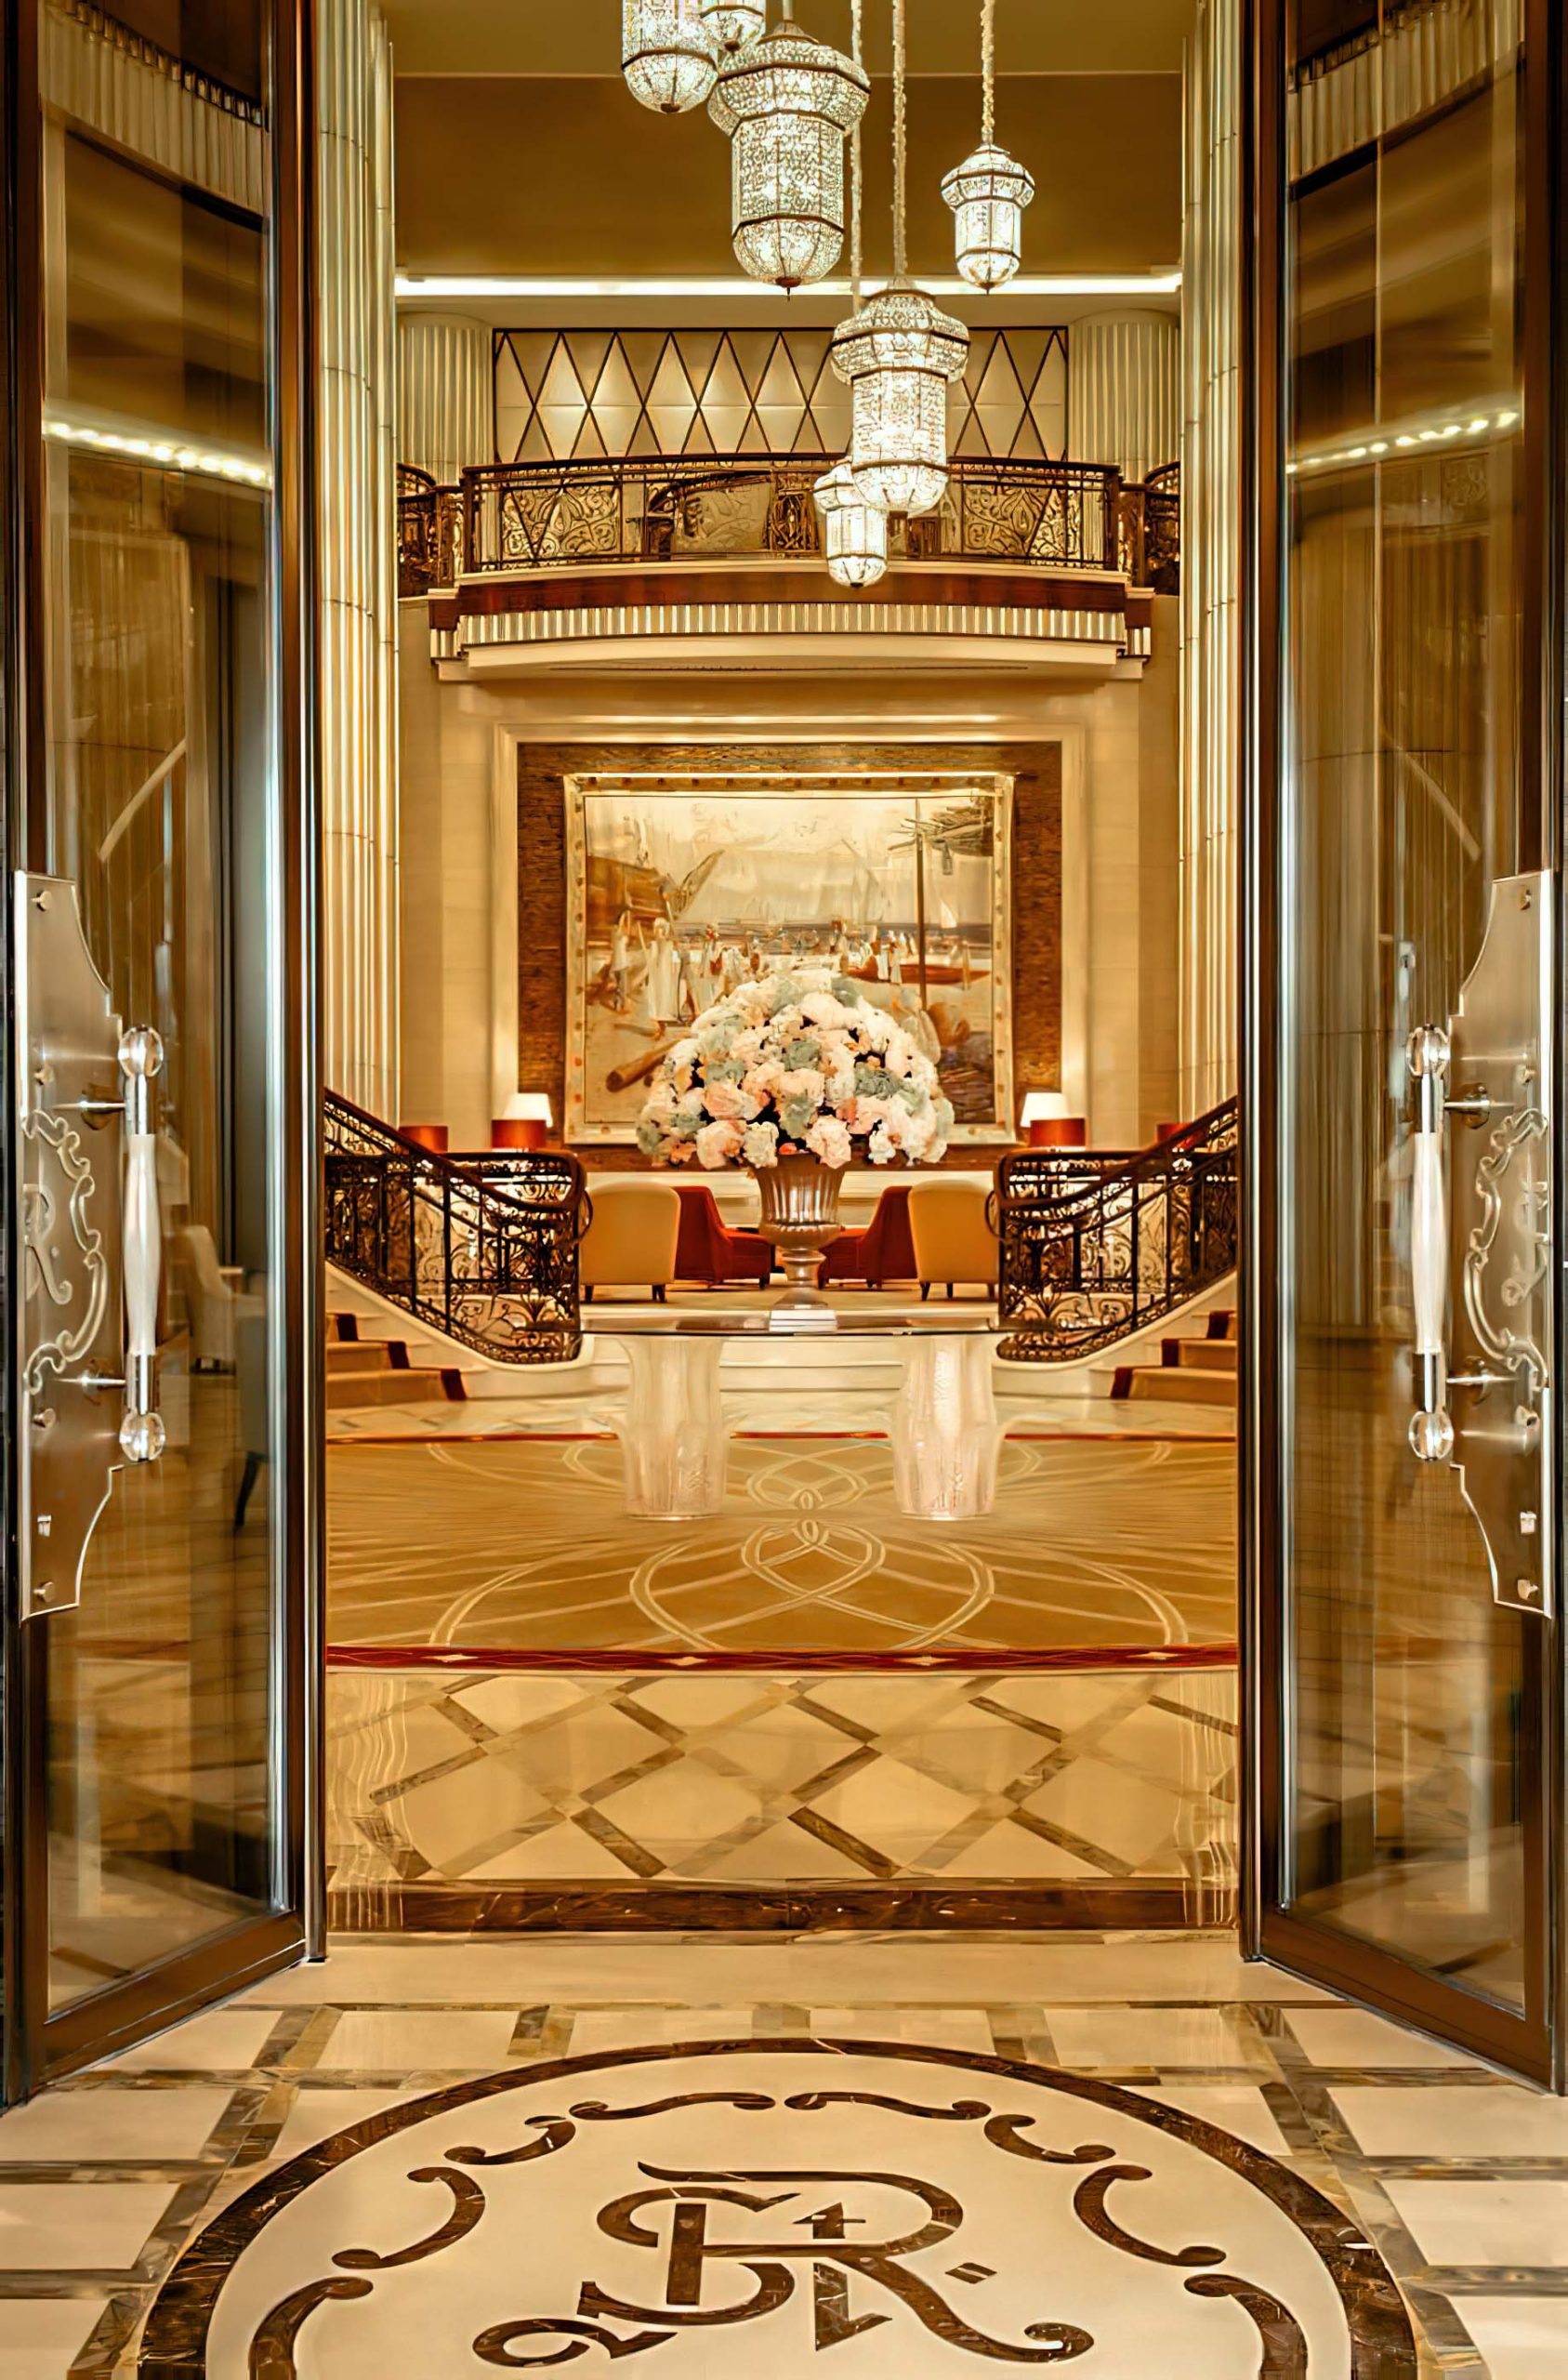 The St. Regis Abu Dhabi Hotel - Abu Dhabi, United Arab Emirates - Front Entrance